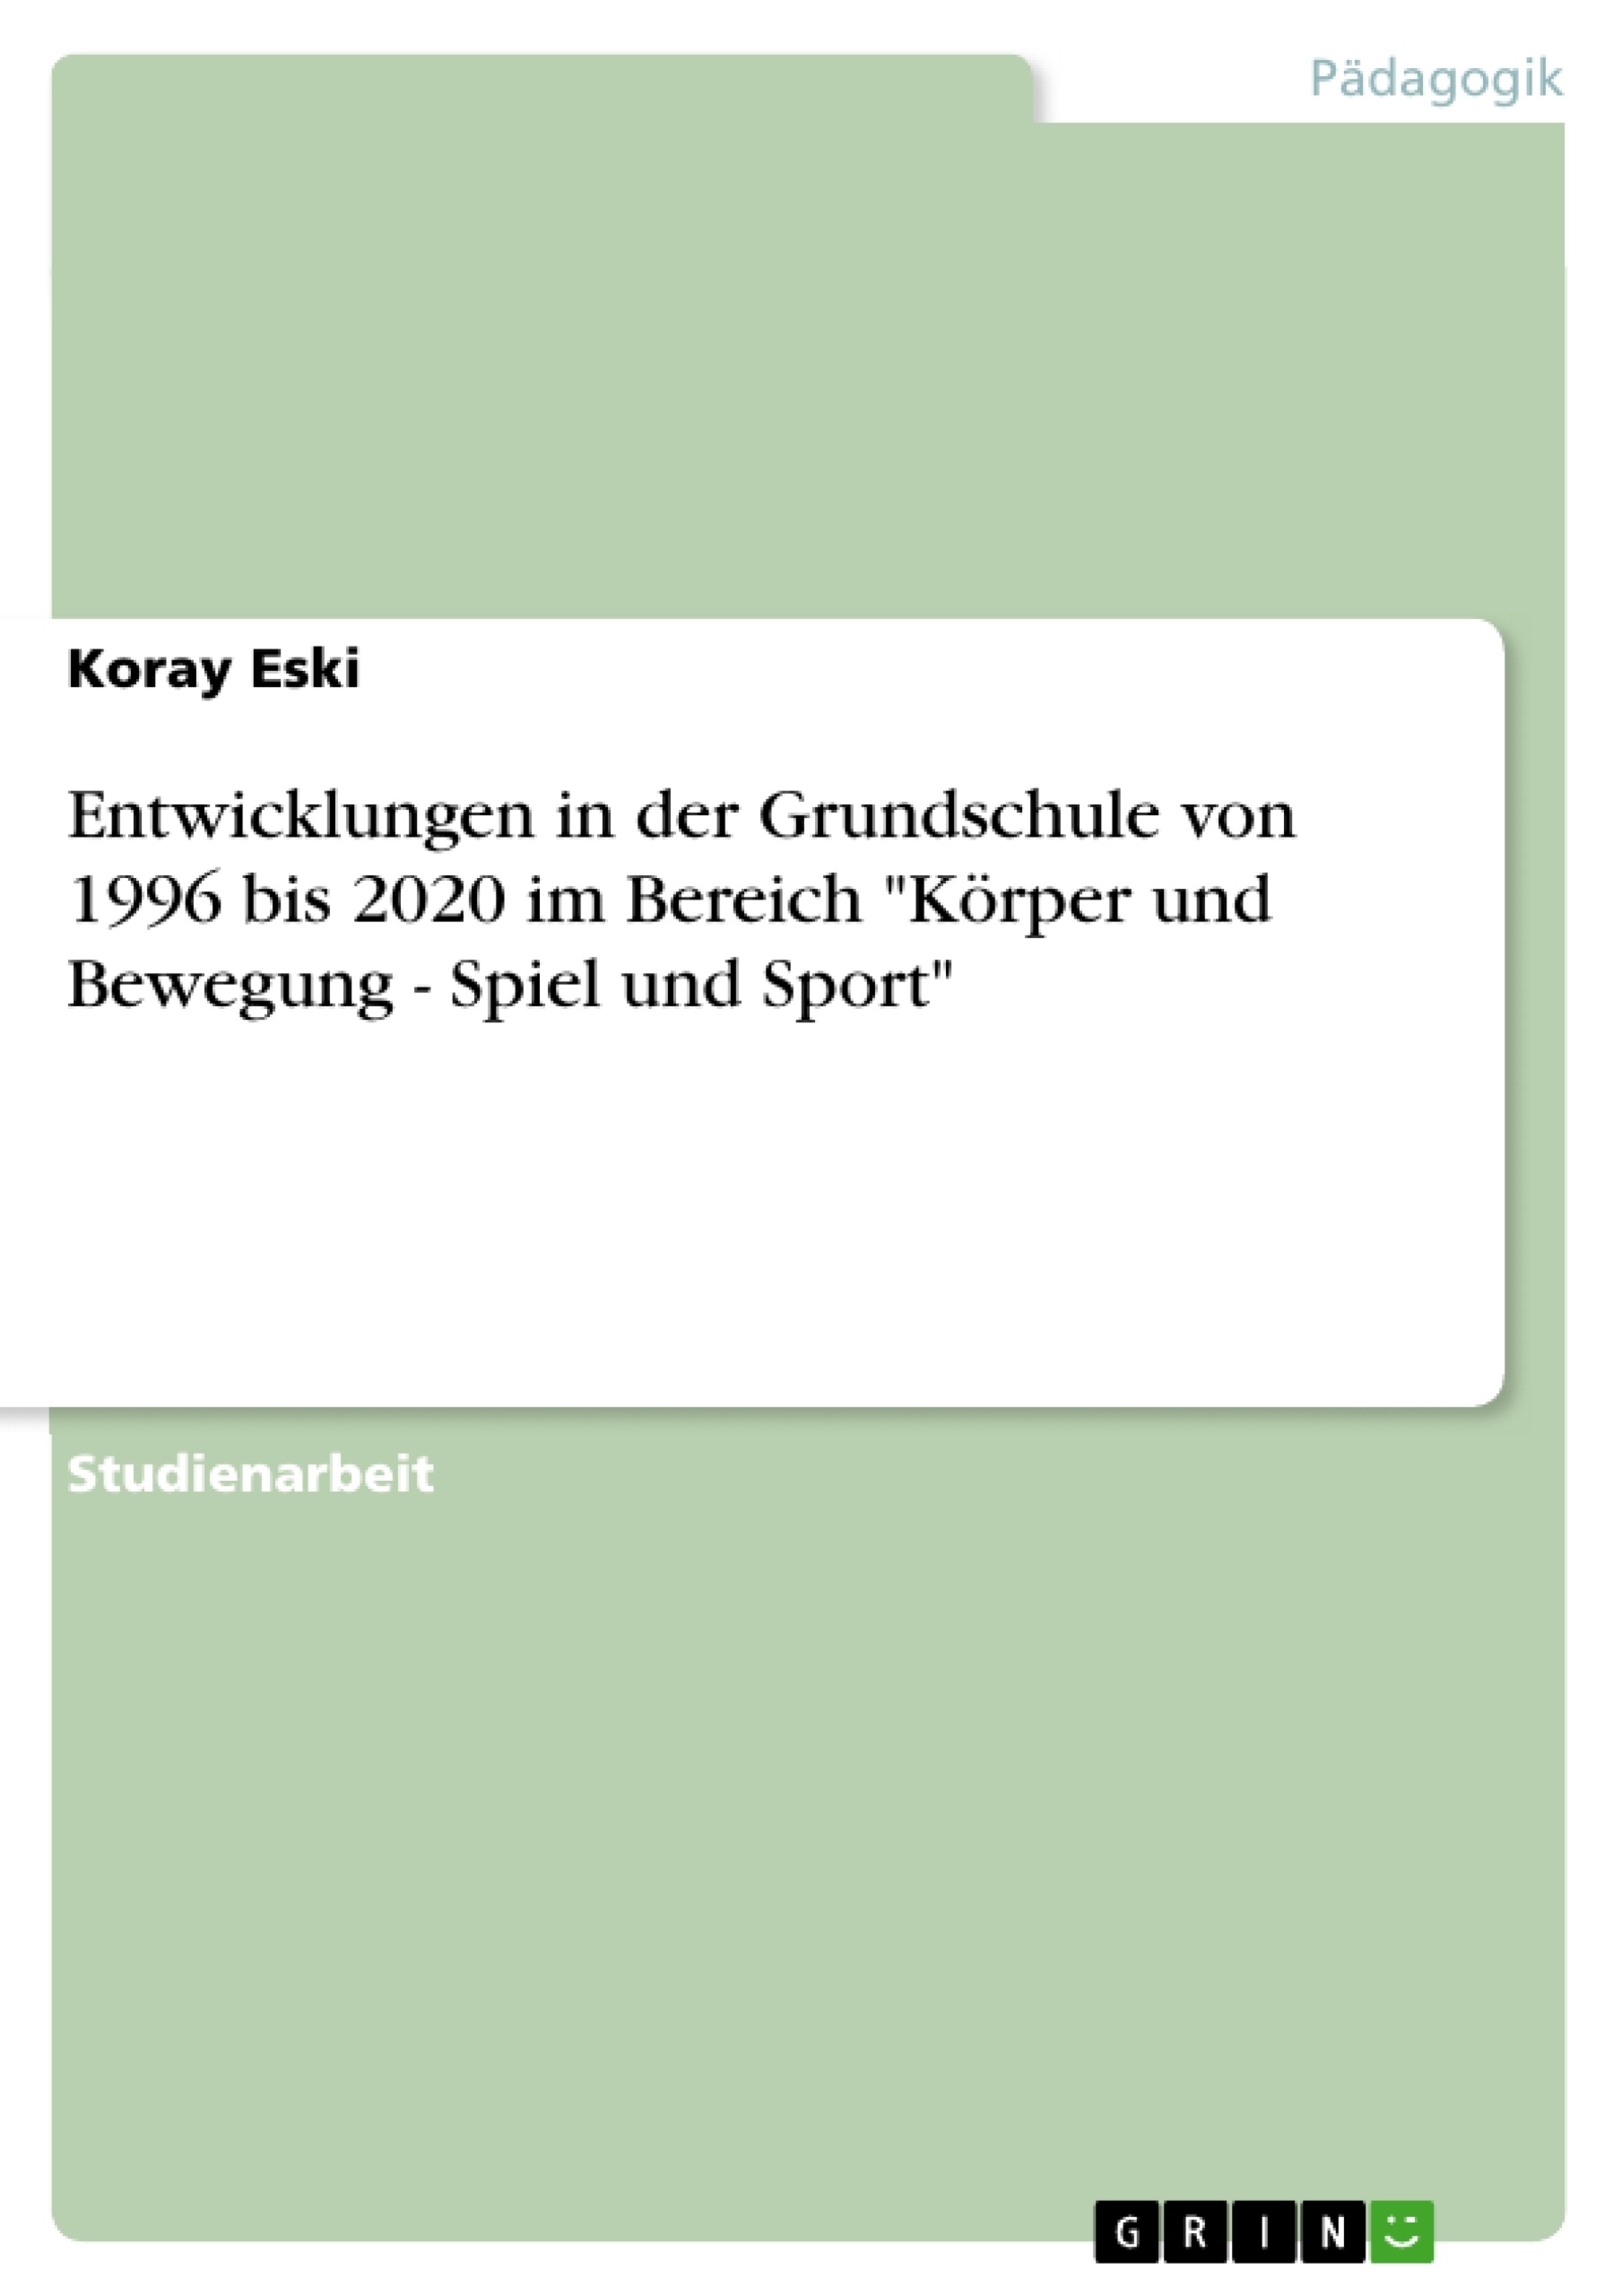 Titre: Entwicklungen in der Grundschule von 1996 bis 2020 im Bereich "Körper und Bewegung - Spiel und Sport"